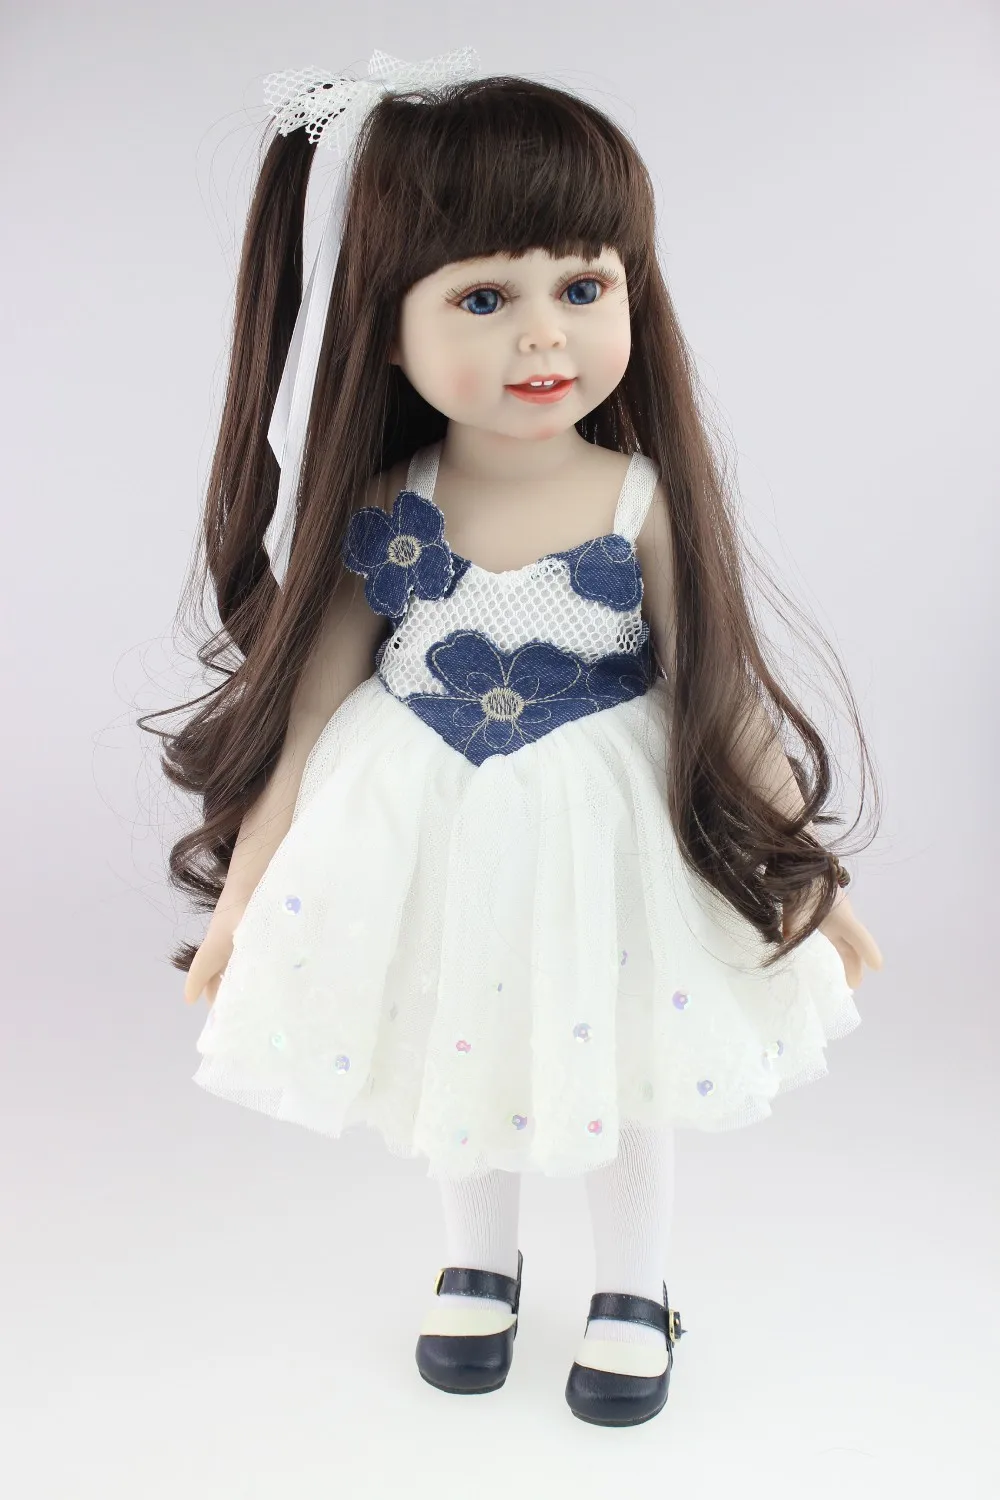 18 дюймов американская кукла для девочек Полное виниловое тело Водонепроницаемая кукла ручной работы полный силиконовые винил SD/BJD